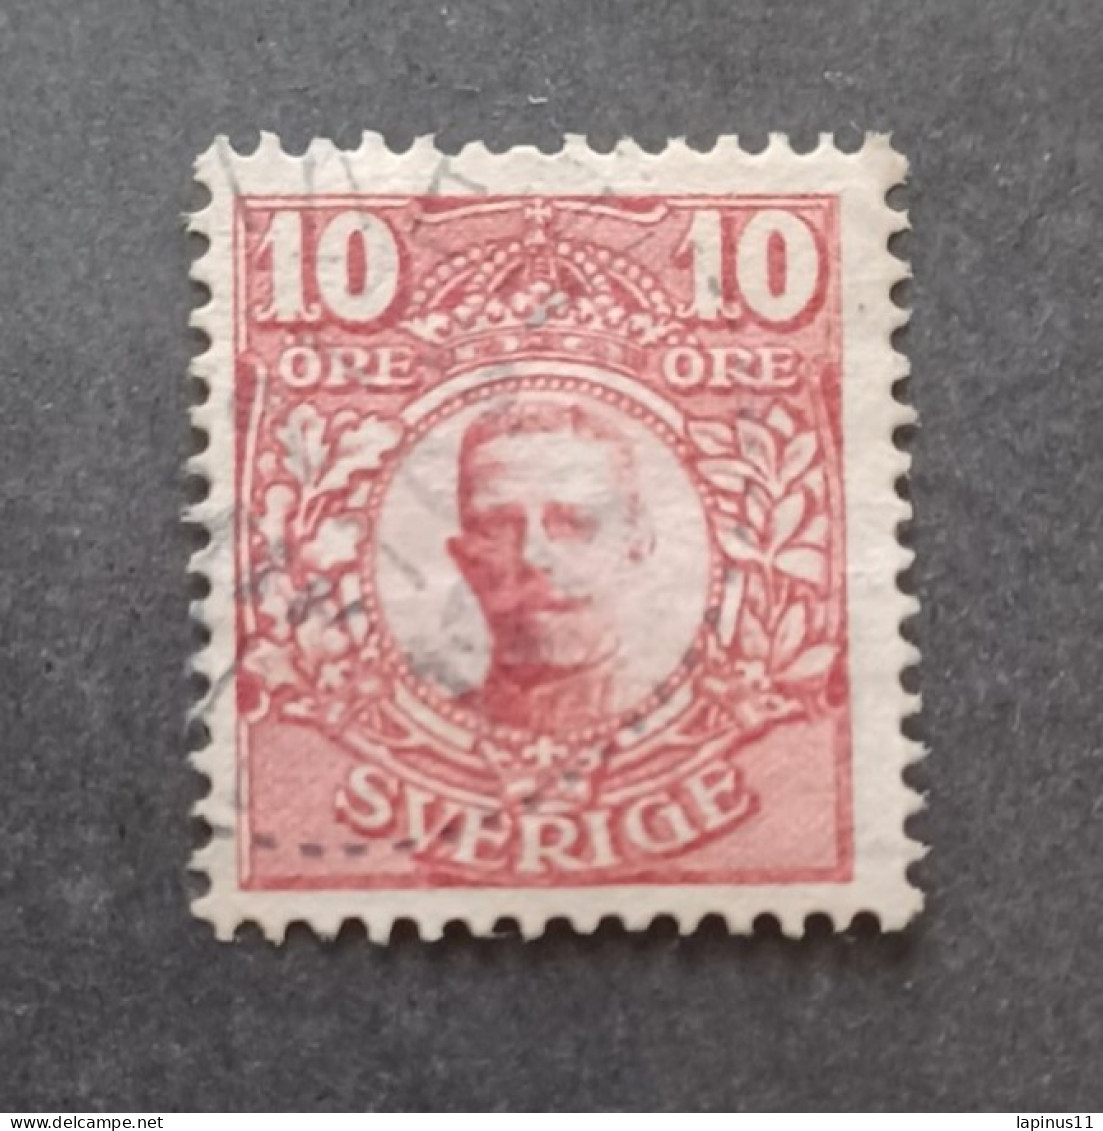 SVEZIA 1910 KING GUSTAV CAT SCOTT N 71 WMK ERROR 180 INVERTED PAPER EDGE VERY RARE---- GIULY - Used Stamps